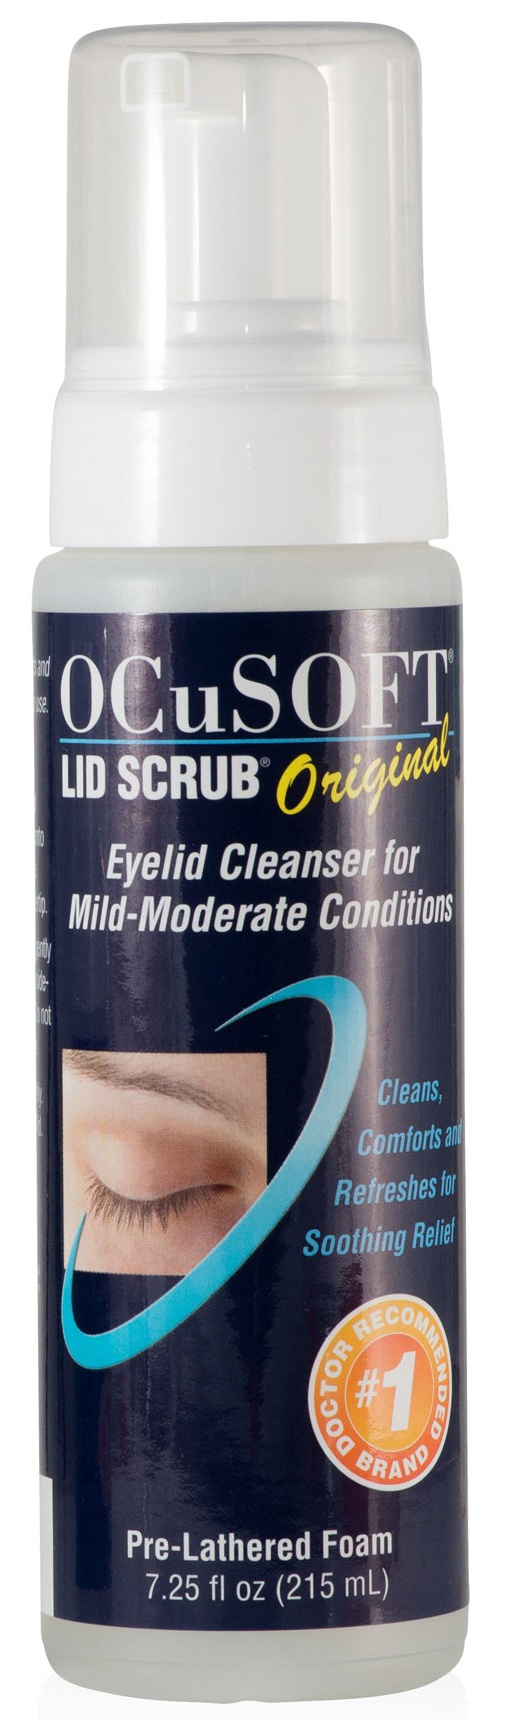 Ocusoft Lid Scrub Foaming Eyelid Cleanser